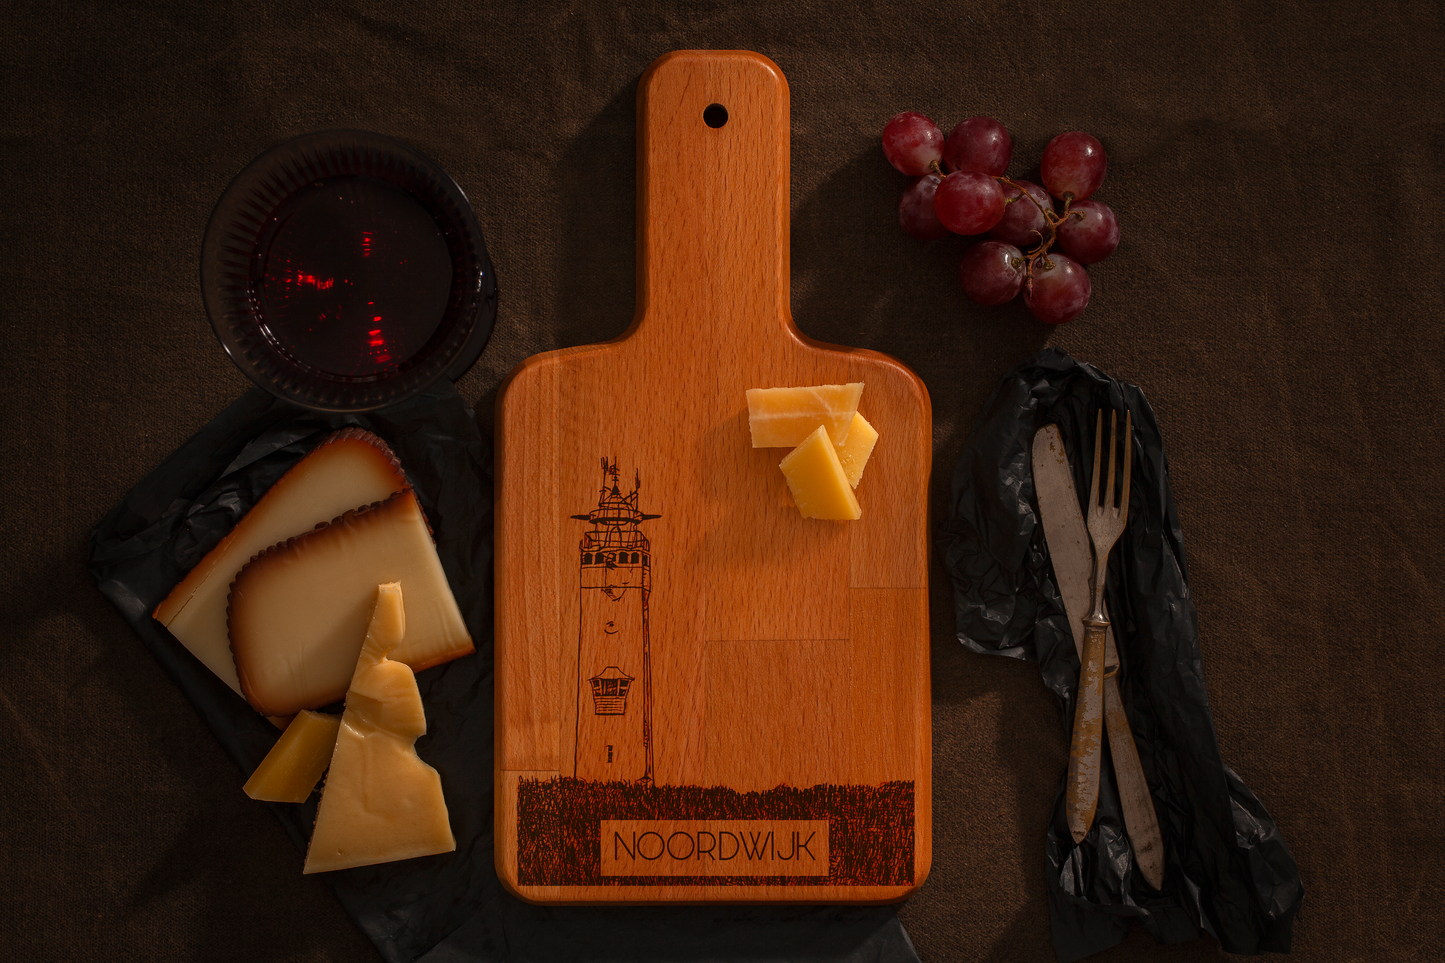 Noordwijk, Vuurtoren, cheese board, with cheese